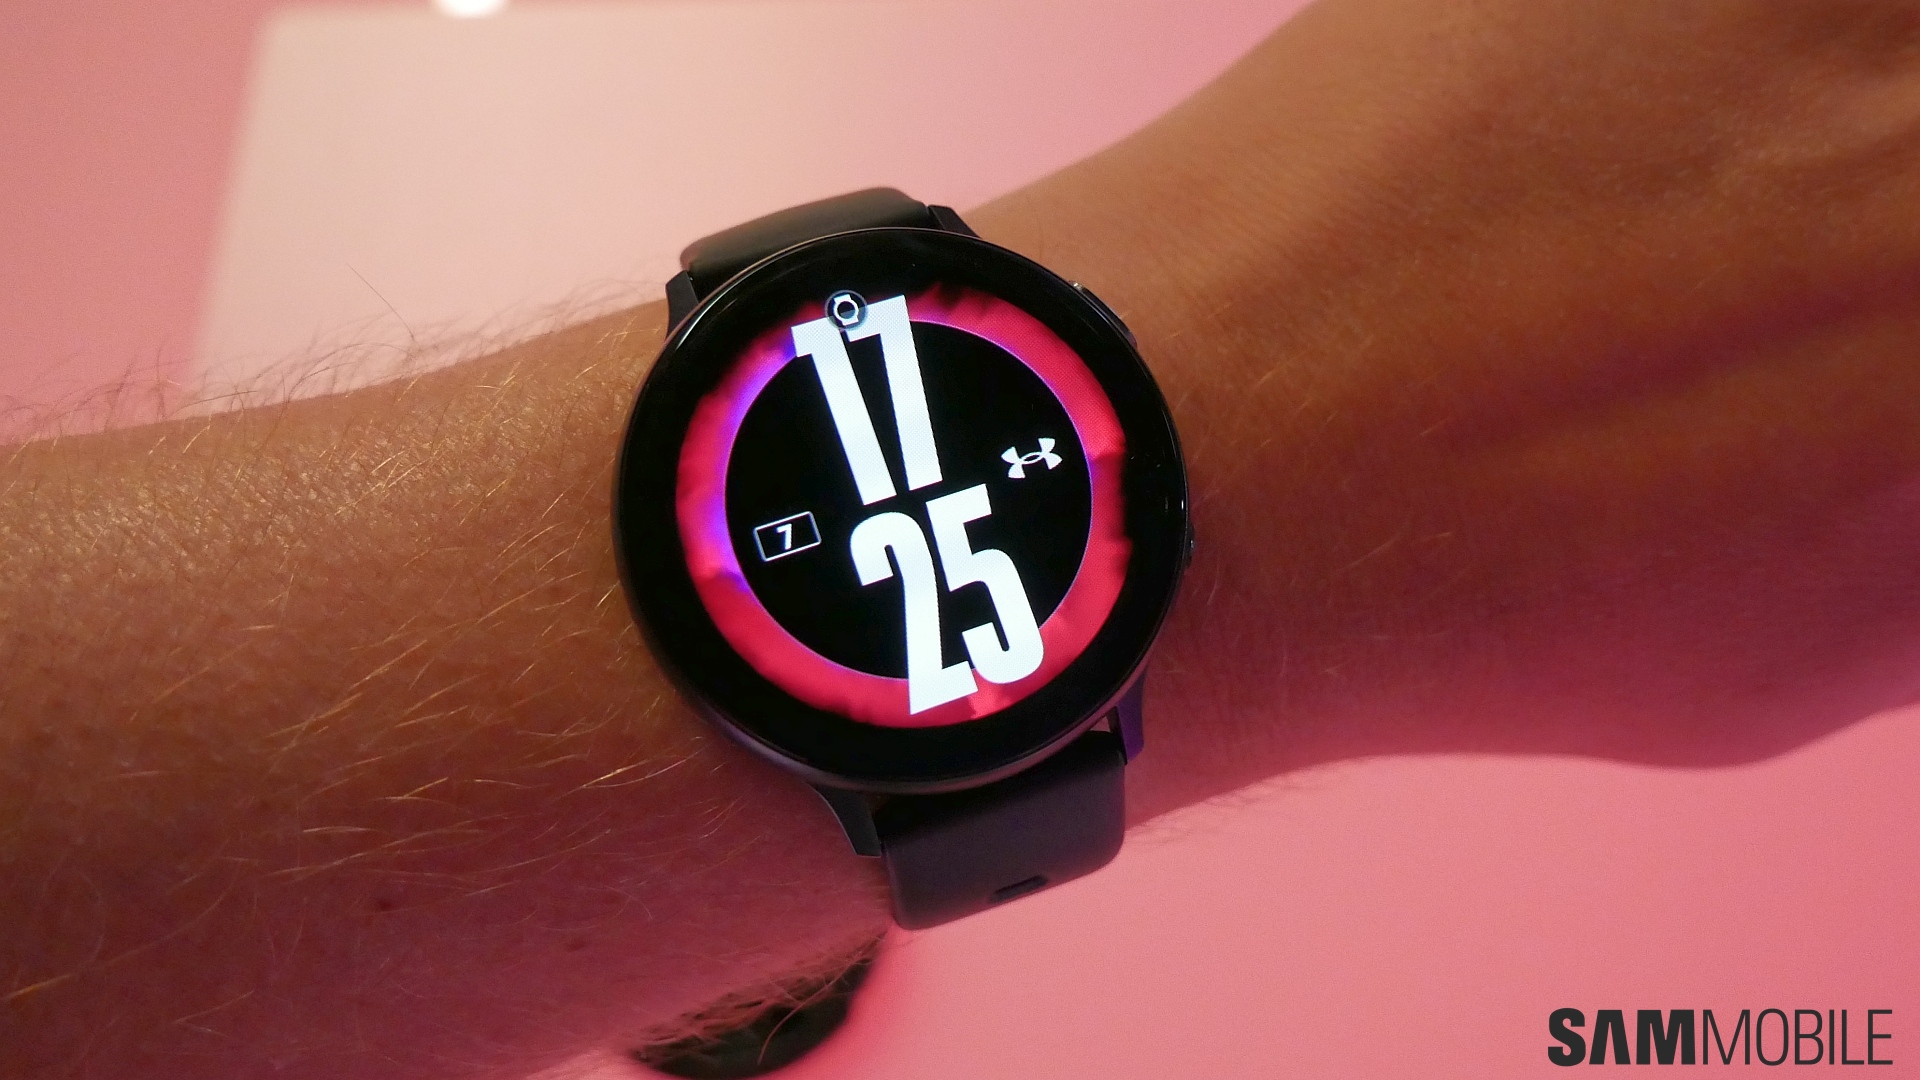 Phiên bản Under Armour Edition của Samsung Galaxy Watch Active được thiết kế với sự chú ý đặc biệt đến tập luyện và hoạt động thể thao. Tích hợp các công nghệ đo lường sức khỏe và theo dõi thể lực, đồng hồ này giúp bạn nâng cao hiệu quả tập luyện một cách hiệu quả.